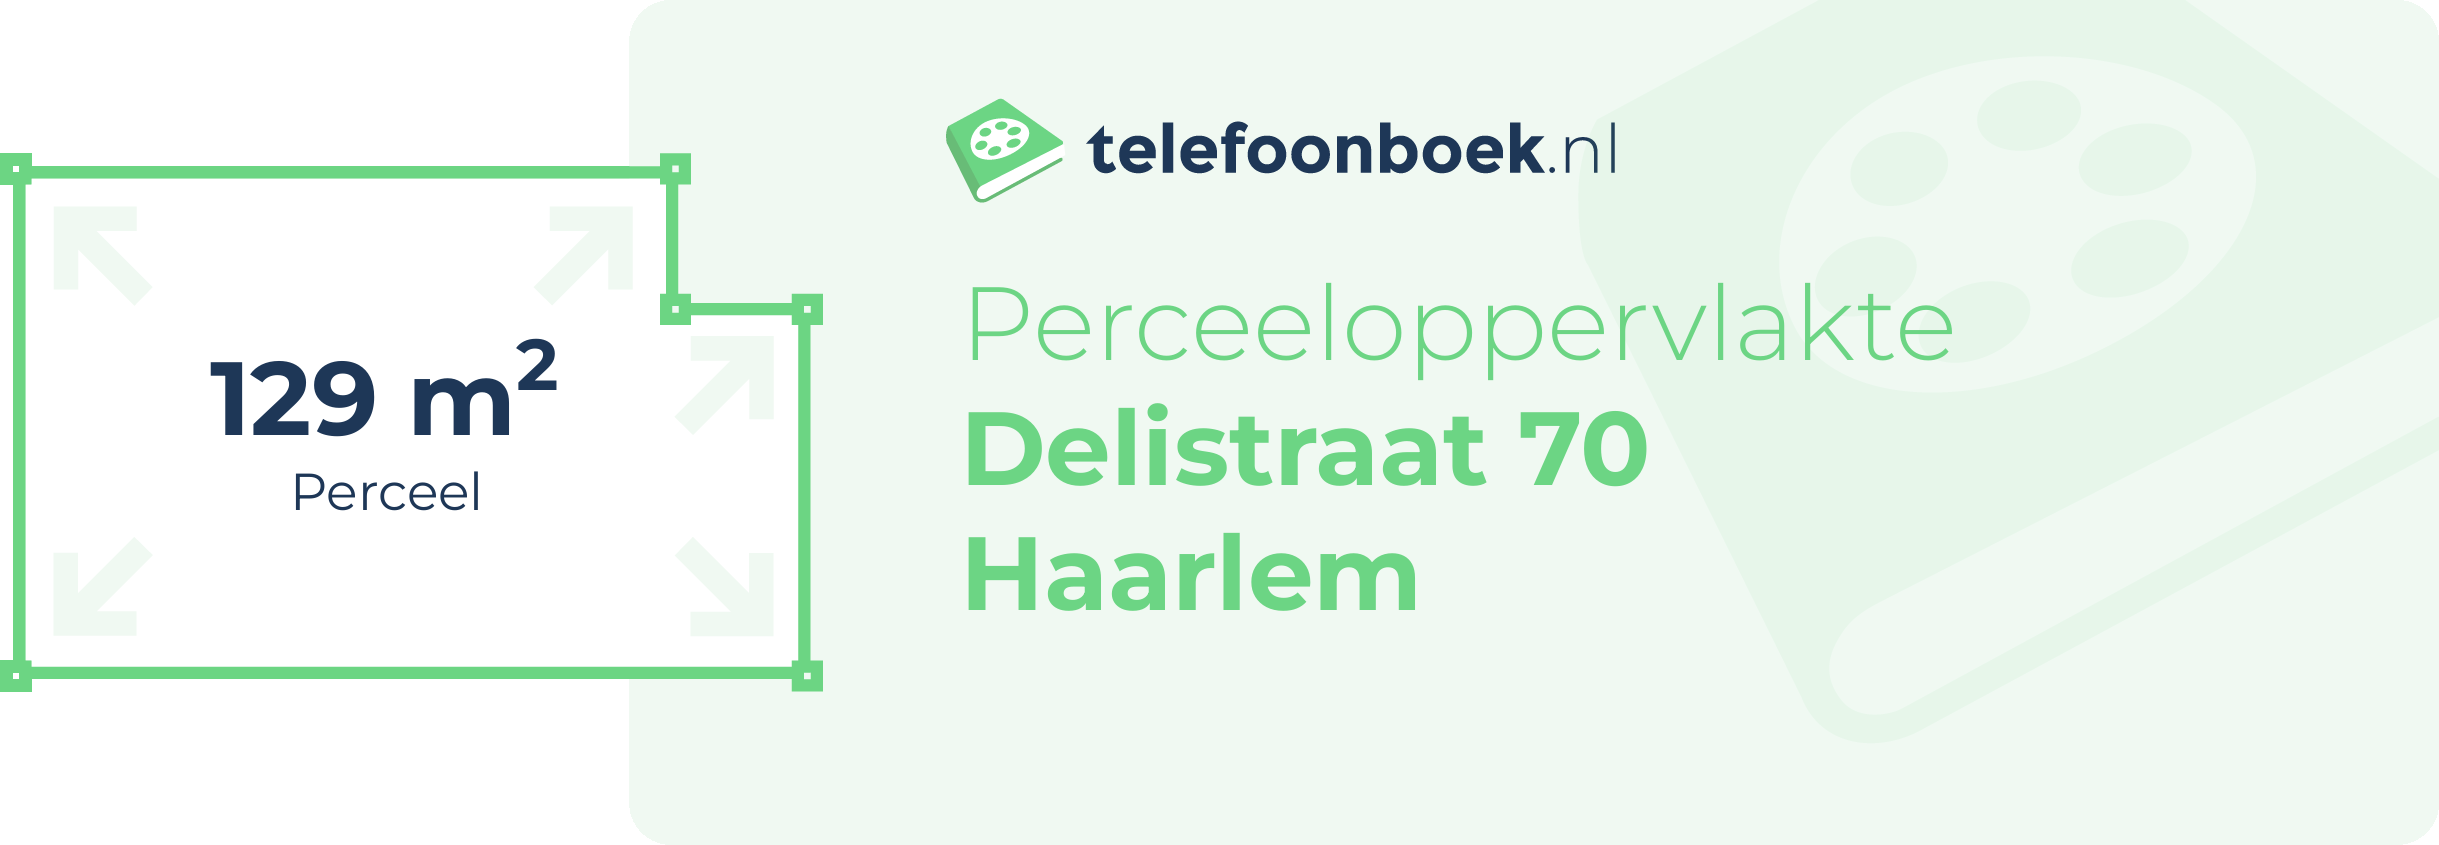 Perceeloppervlakte Delistraat 70 Haarlem